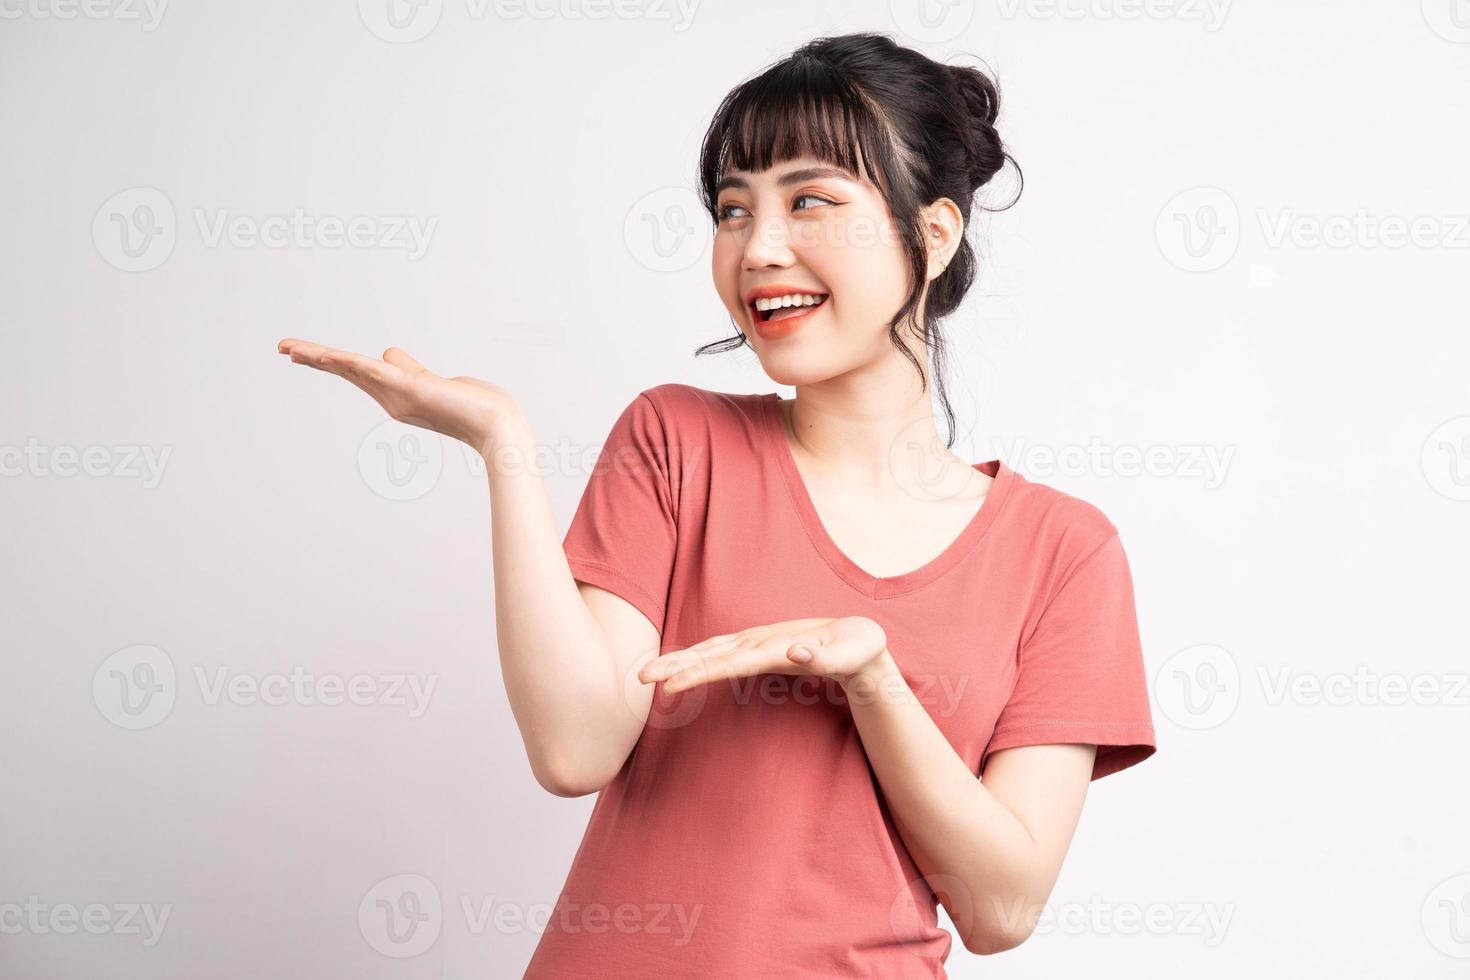 jonge aziatische vrouw die zich voordeed op een witte achtergrond, met de vinger om te wijzen en te laten zien, handgebaar foto